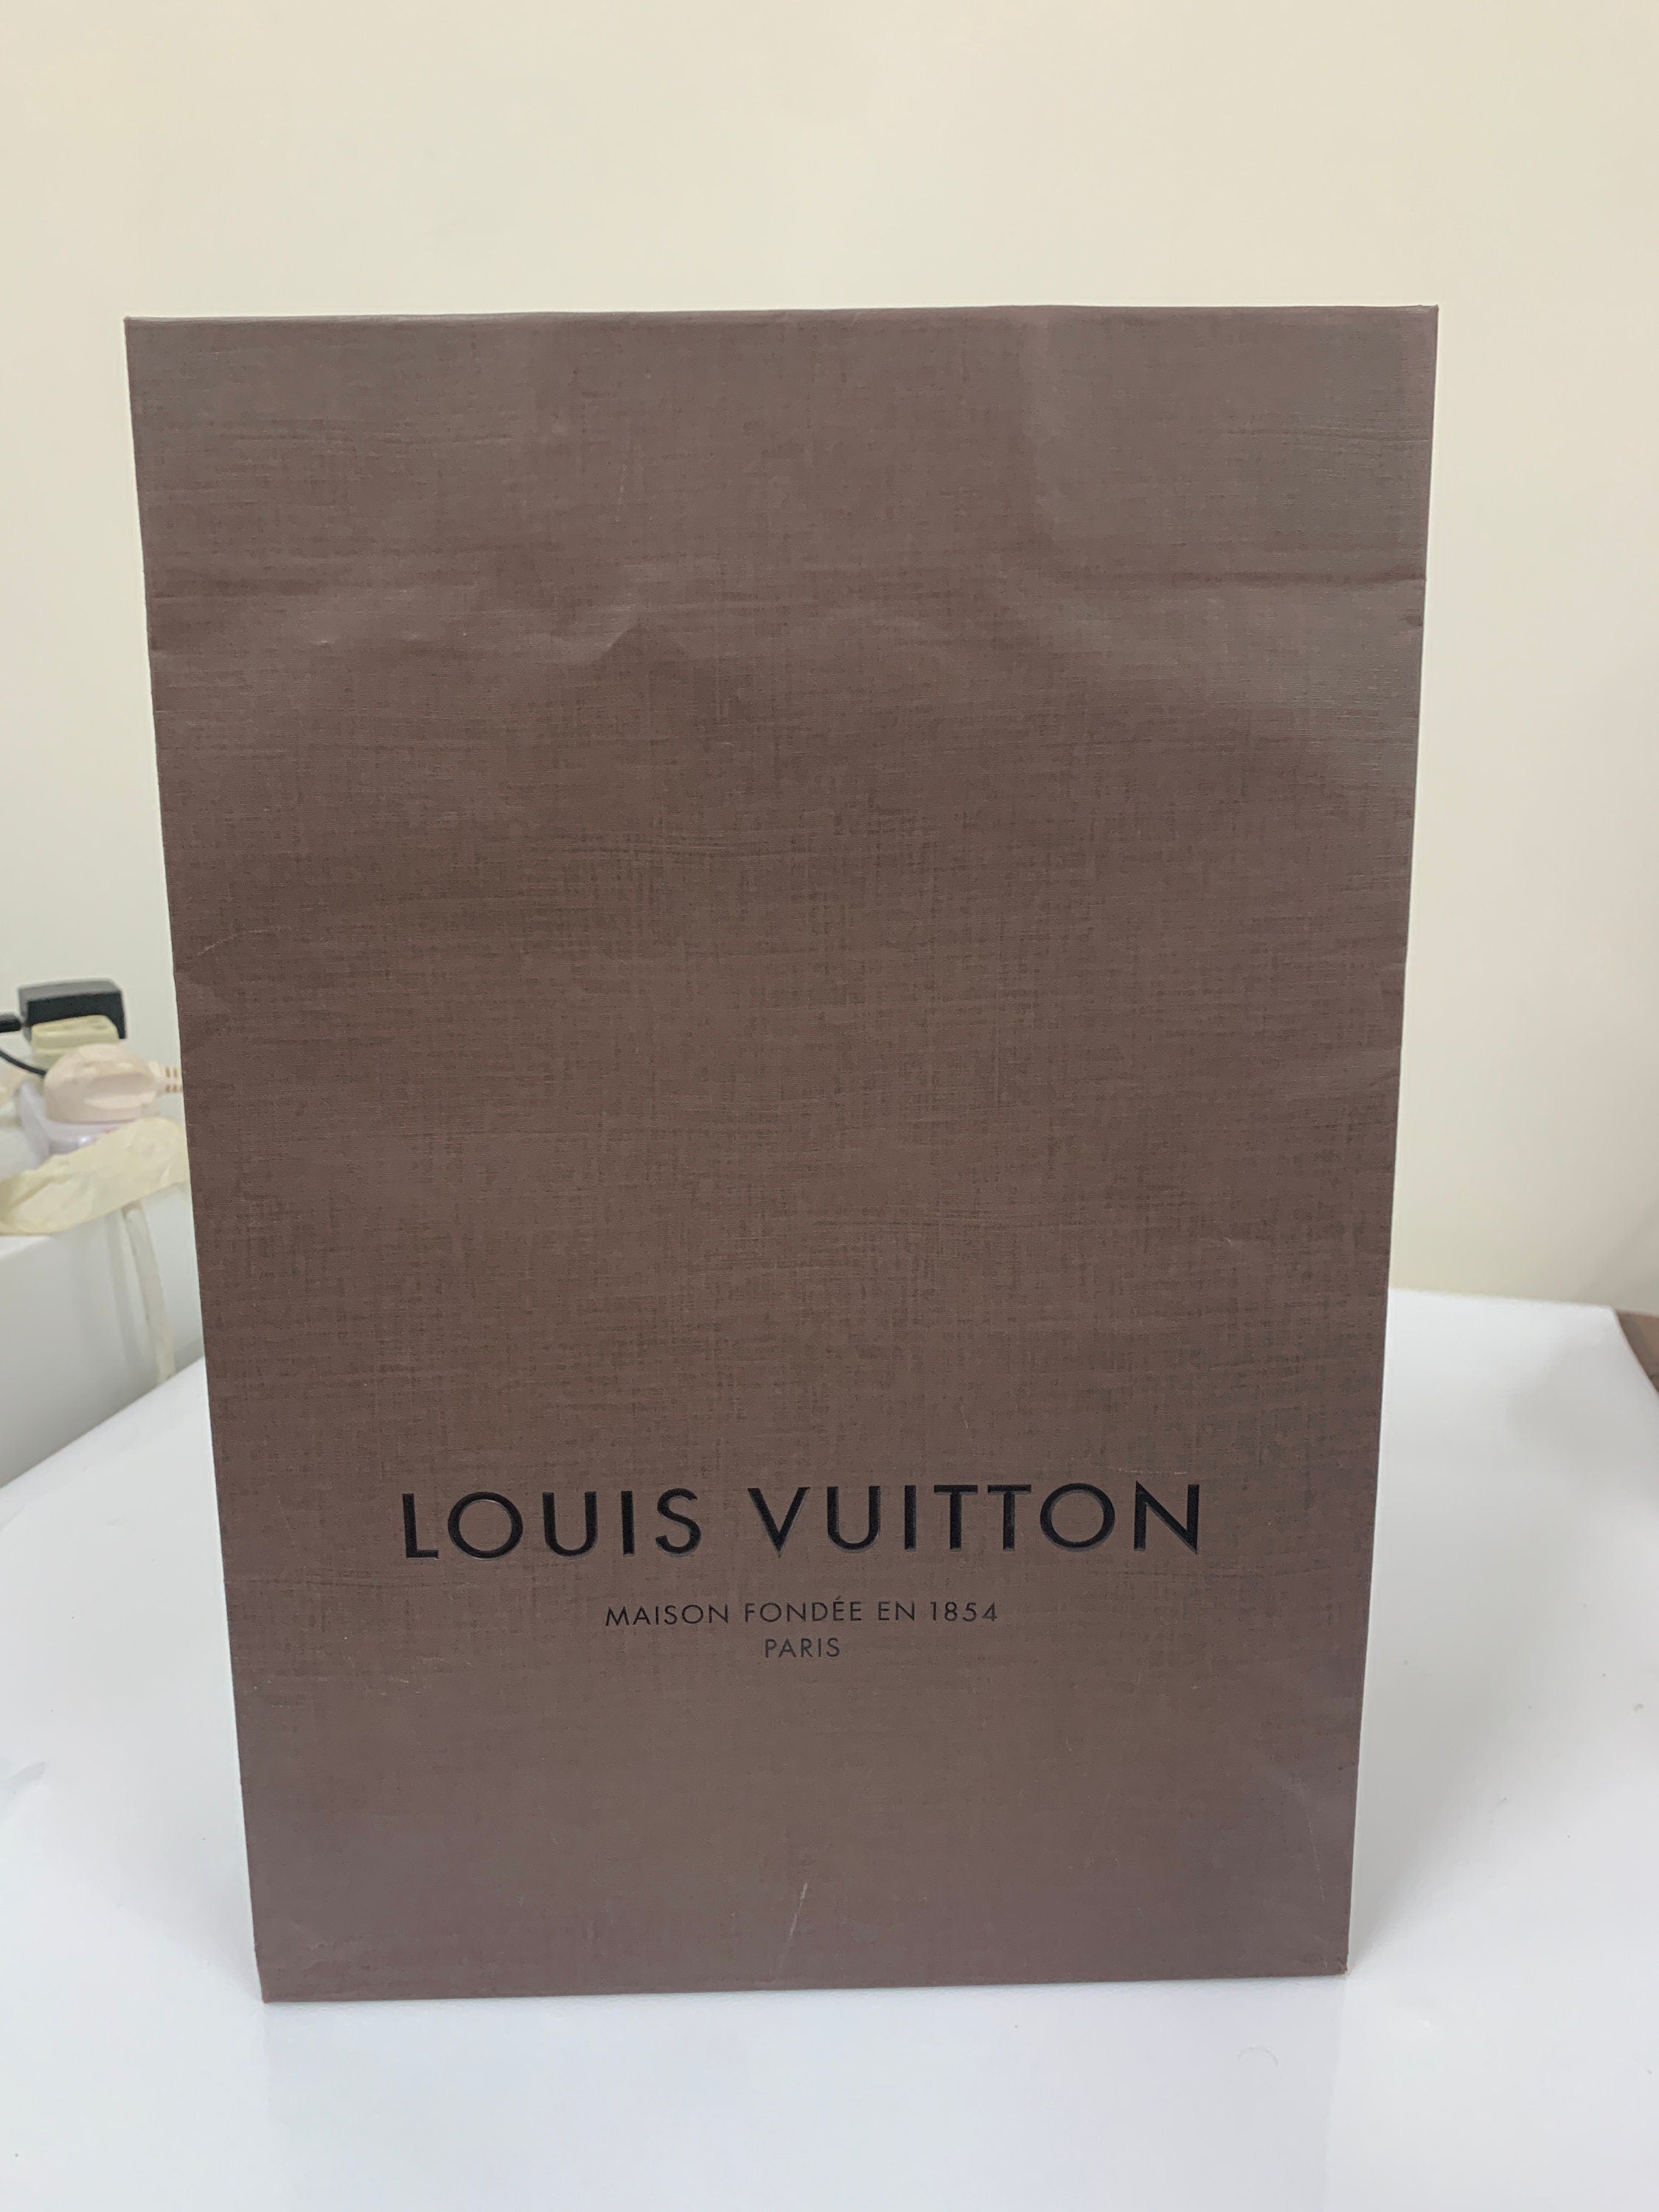 Louis Vuitton Maison Fondee En 1854 Paris gift bag